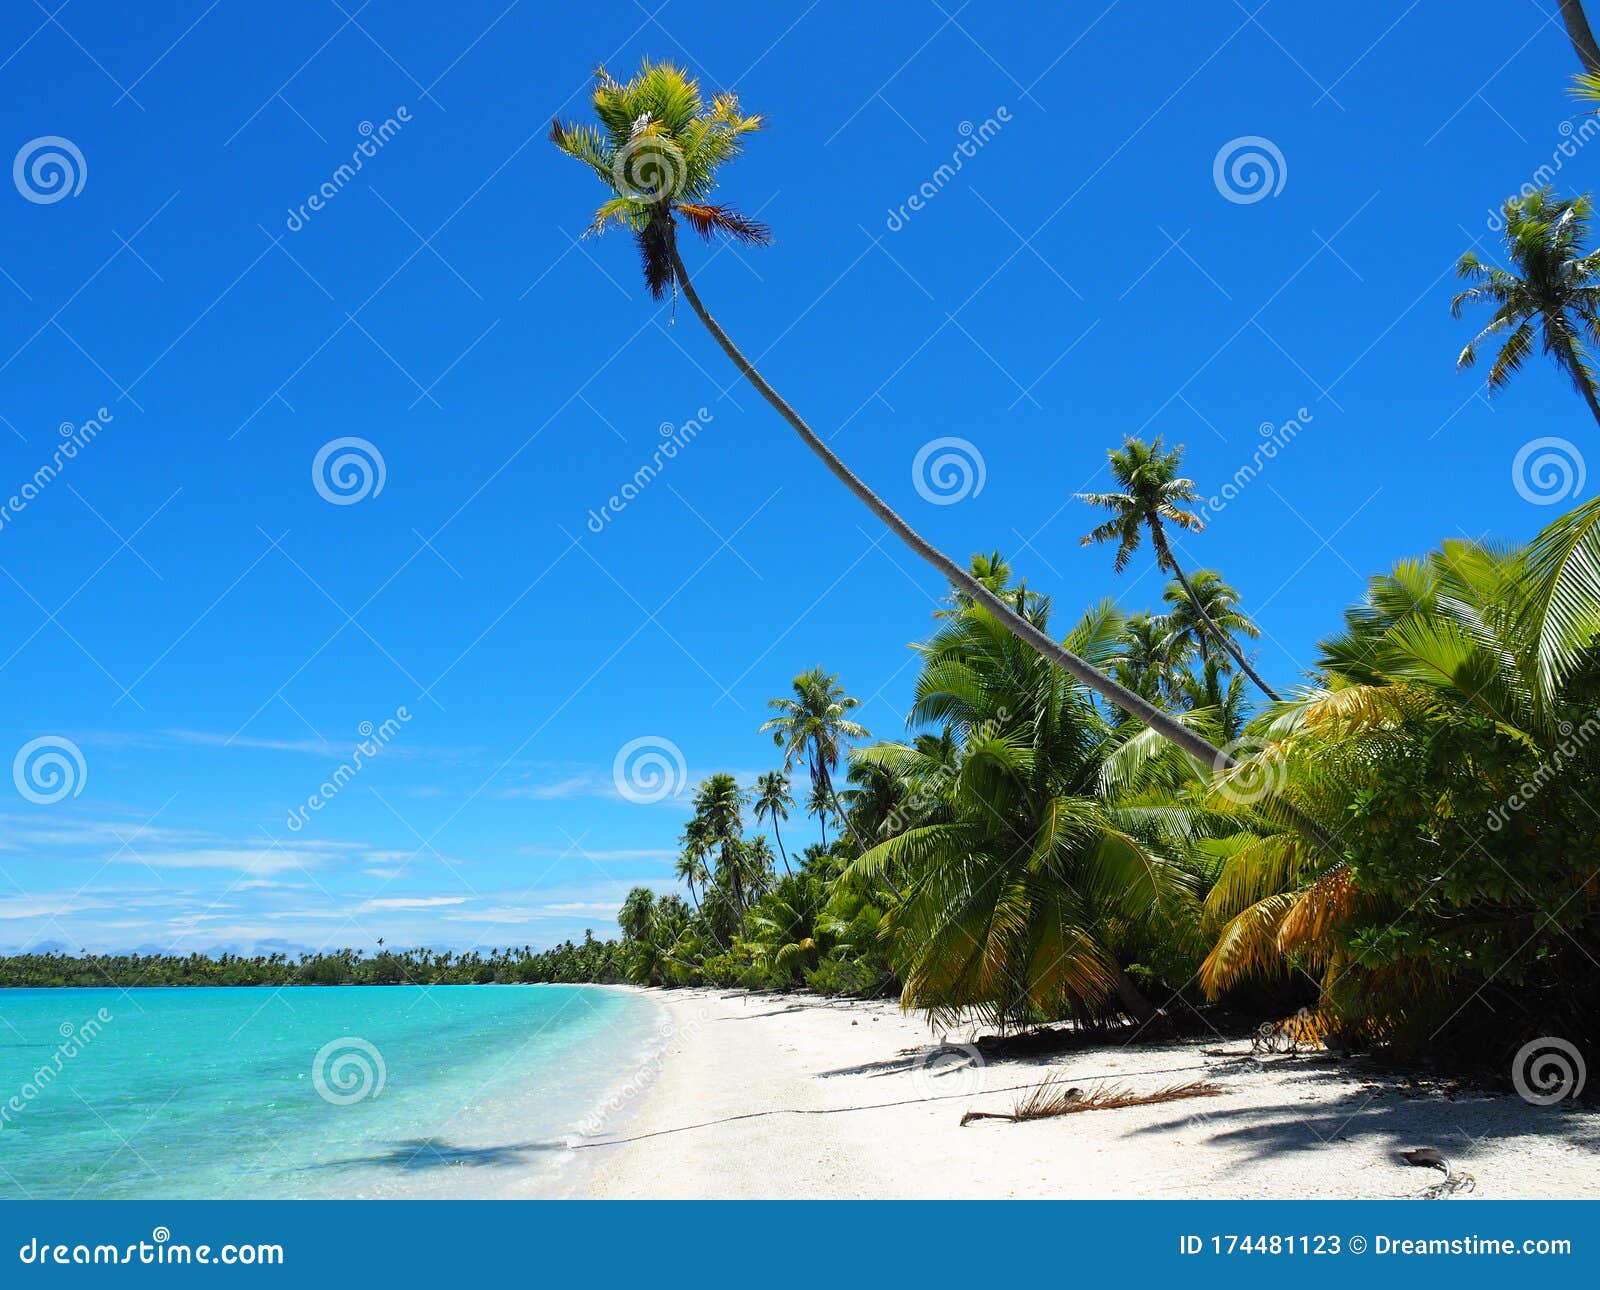 french polynesia - fakarava: lonely beach